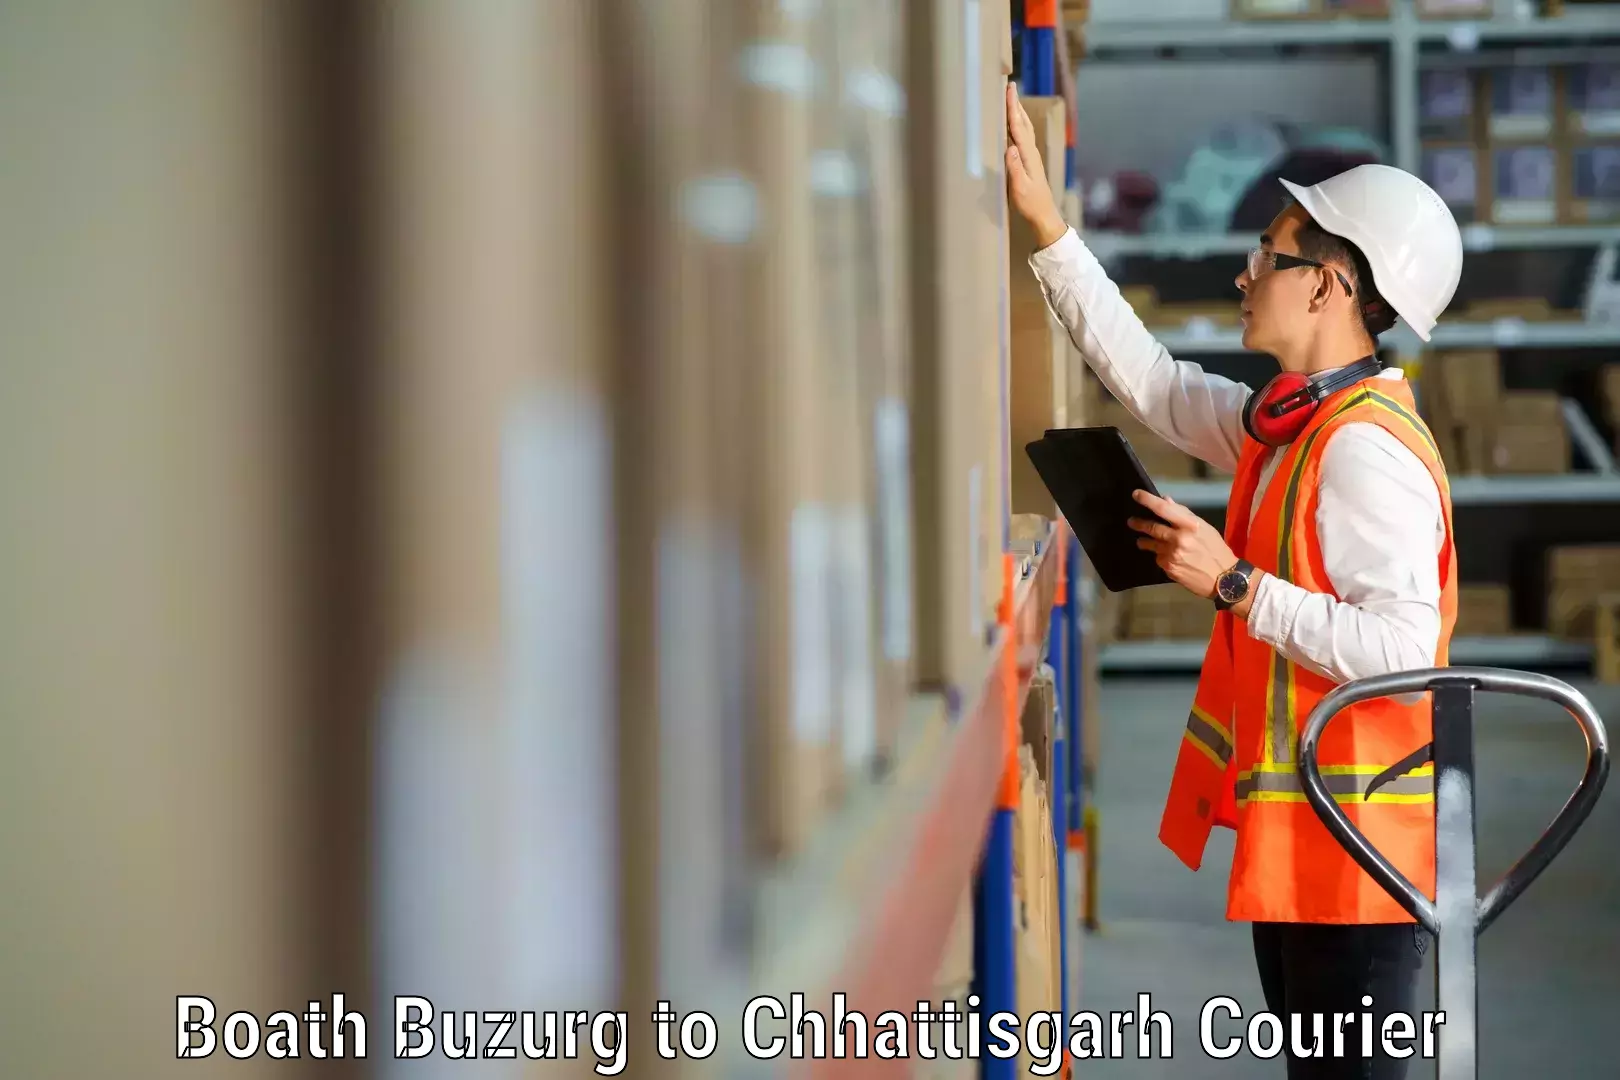 Specialized moving company Boath Buzurg to Korea Chhattisgarh